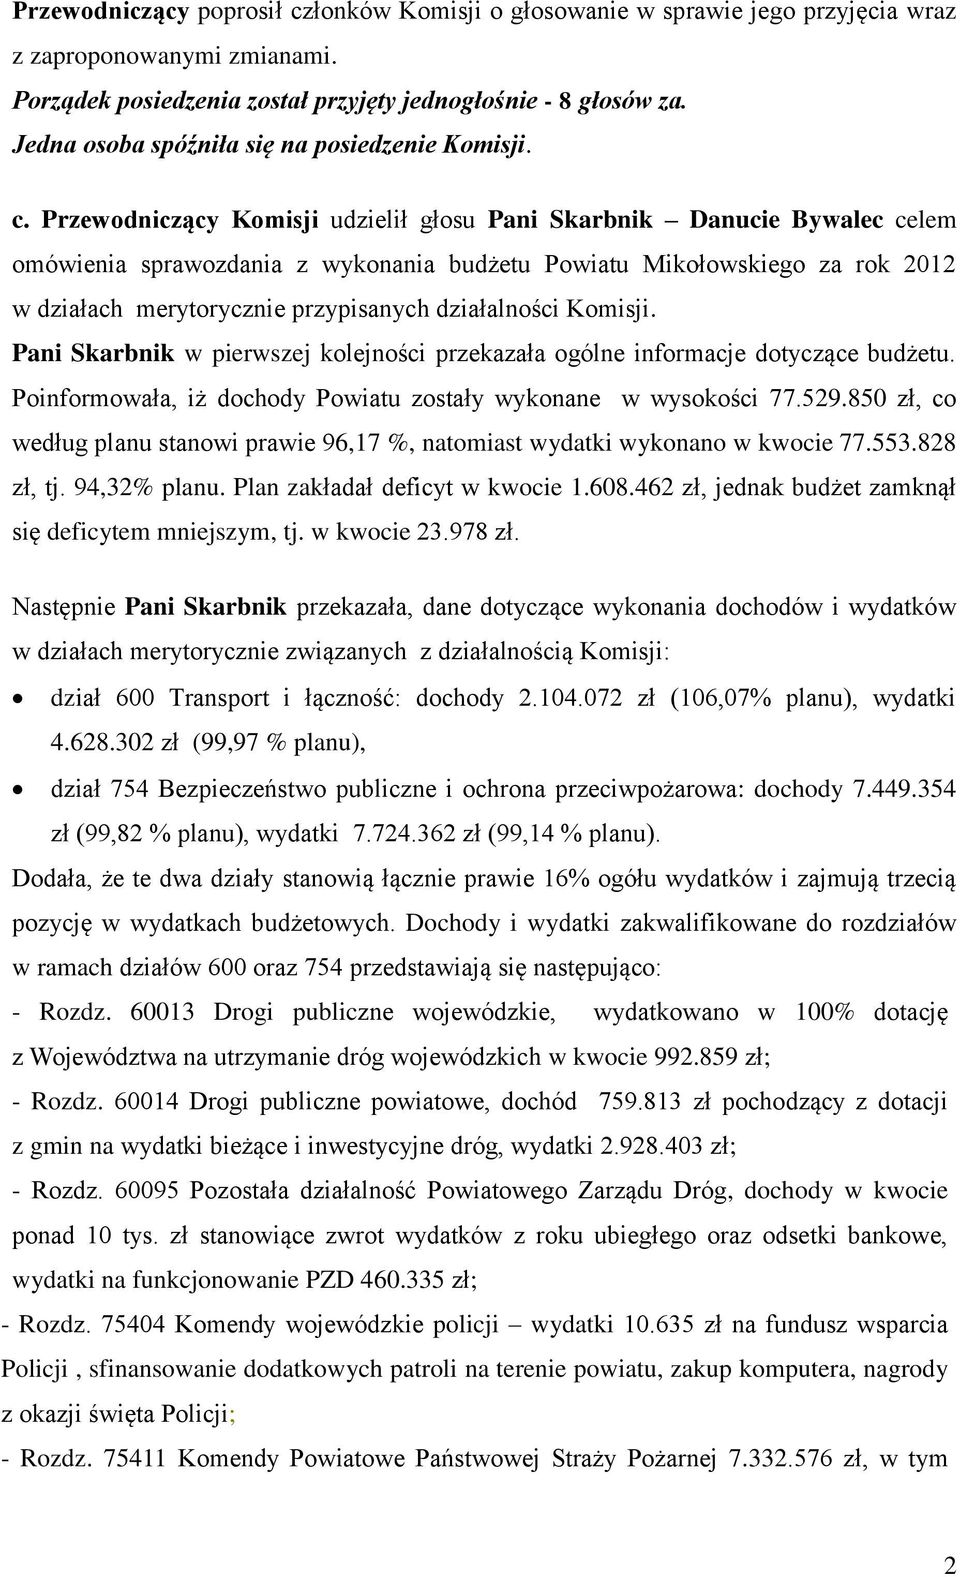 Przewodniczący Komisji udzielił głosu Pani Skarbnik Danucie Bywalec celem omówienia sprawozdania z wykonania budżetu Powiatu Mikołowskiego za rok 2012 w działach merytorycznie przypisanych